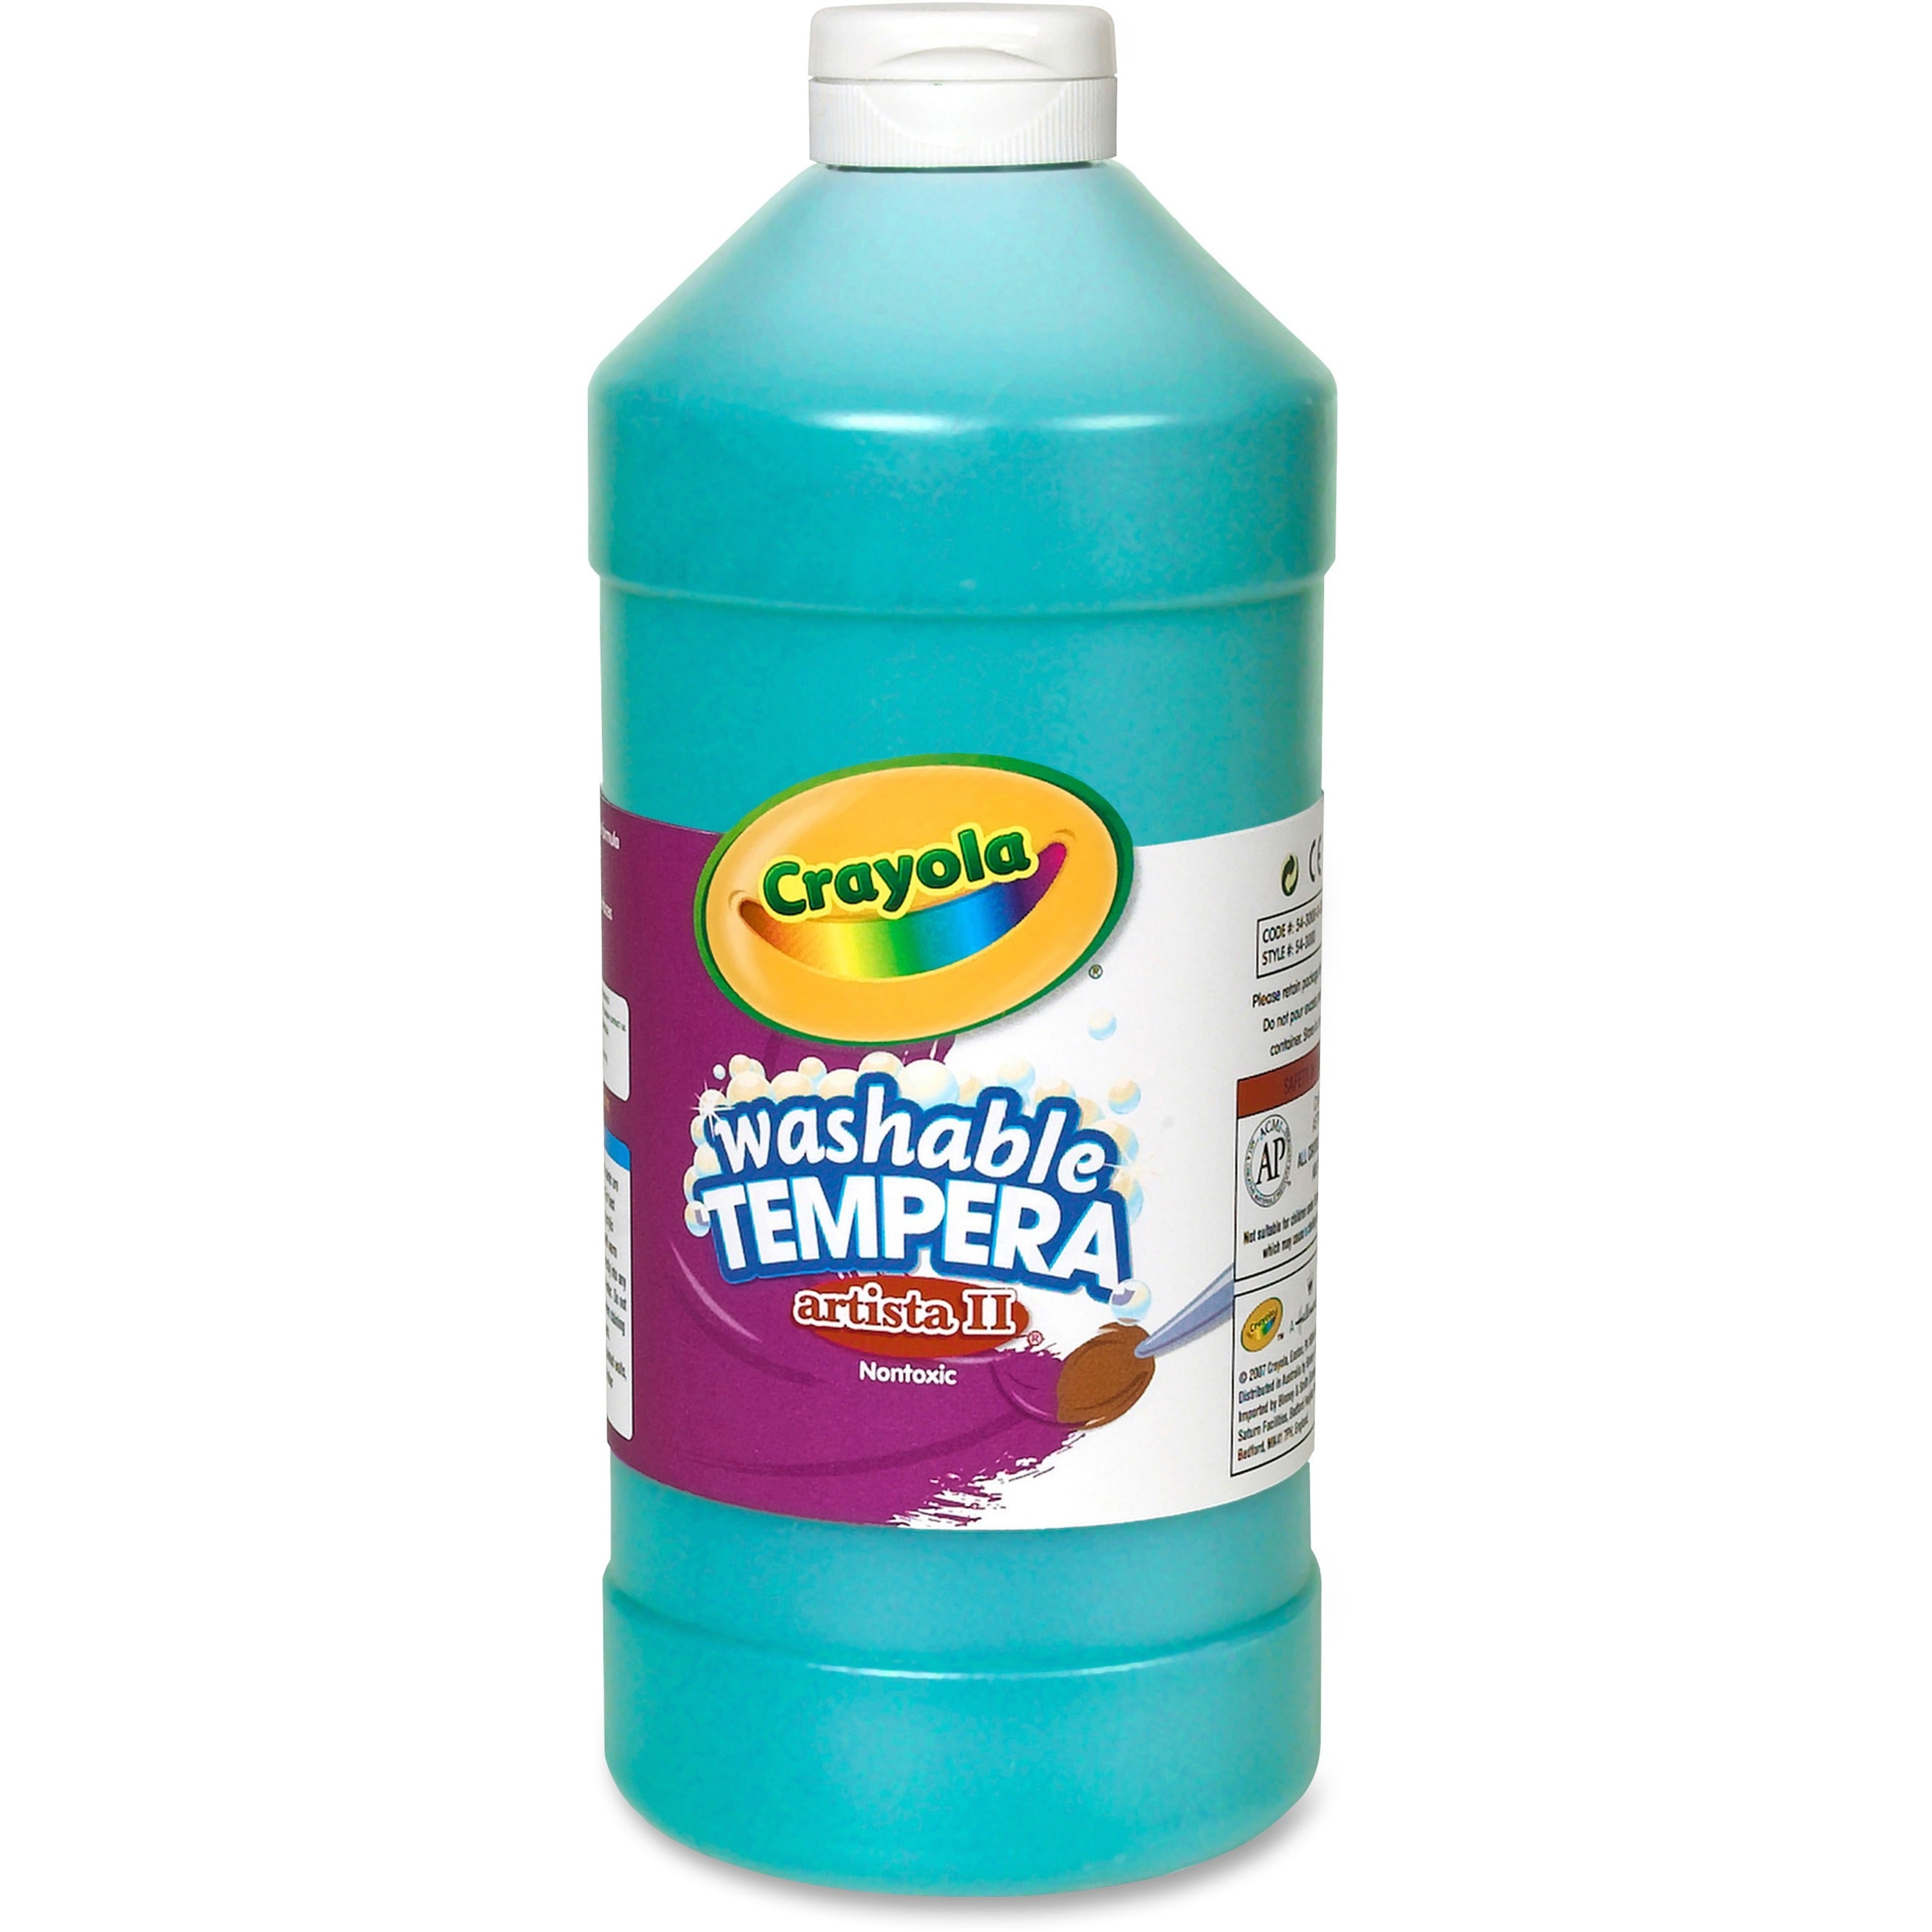 Crayola Washable Tempera Paint - 1 quart - 1 Each - Turquoise - 